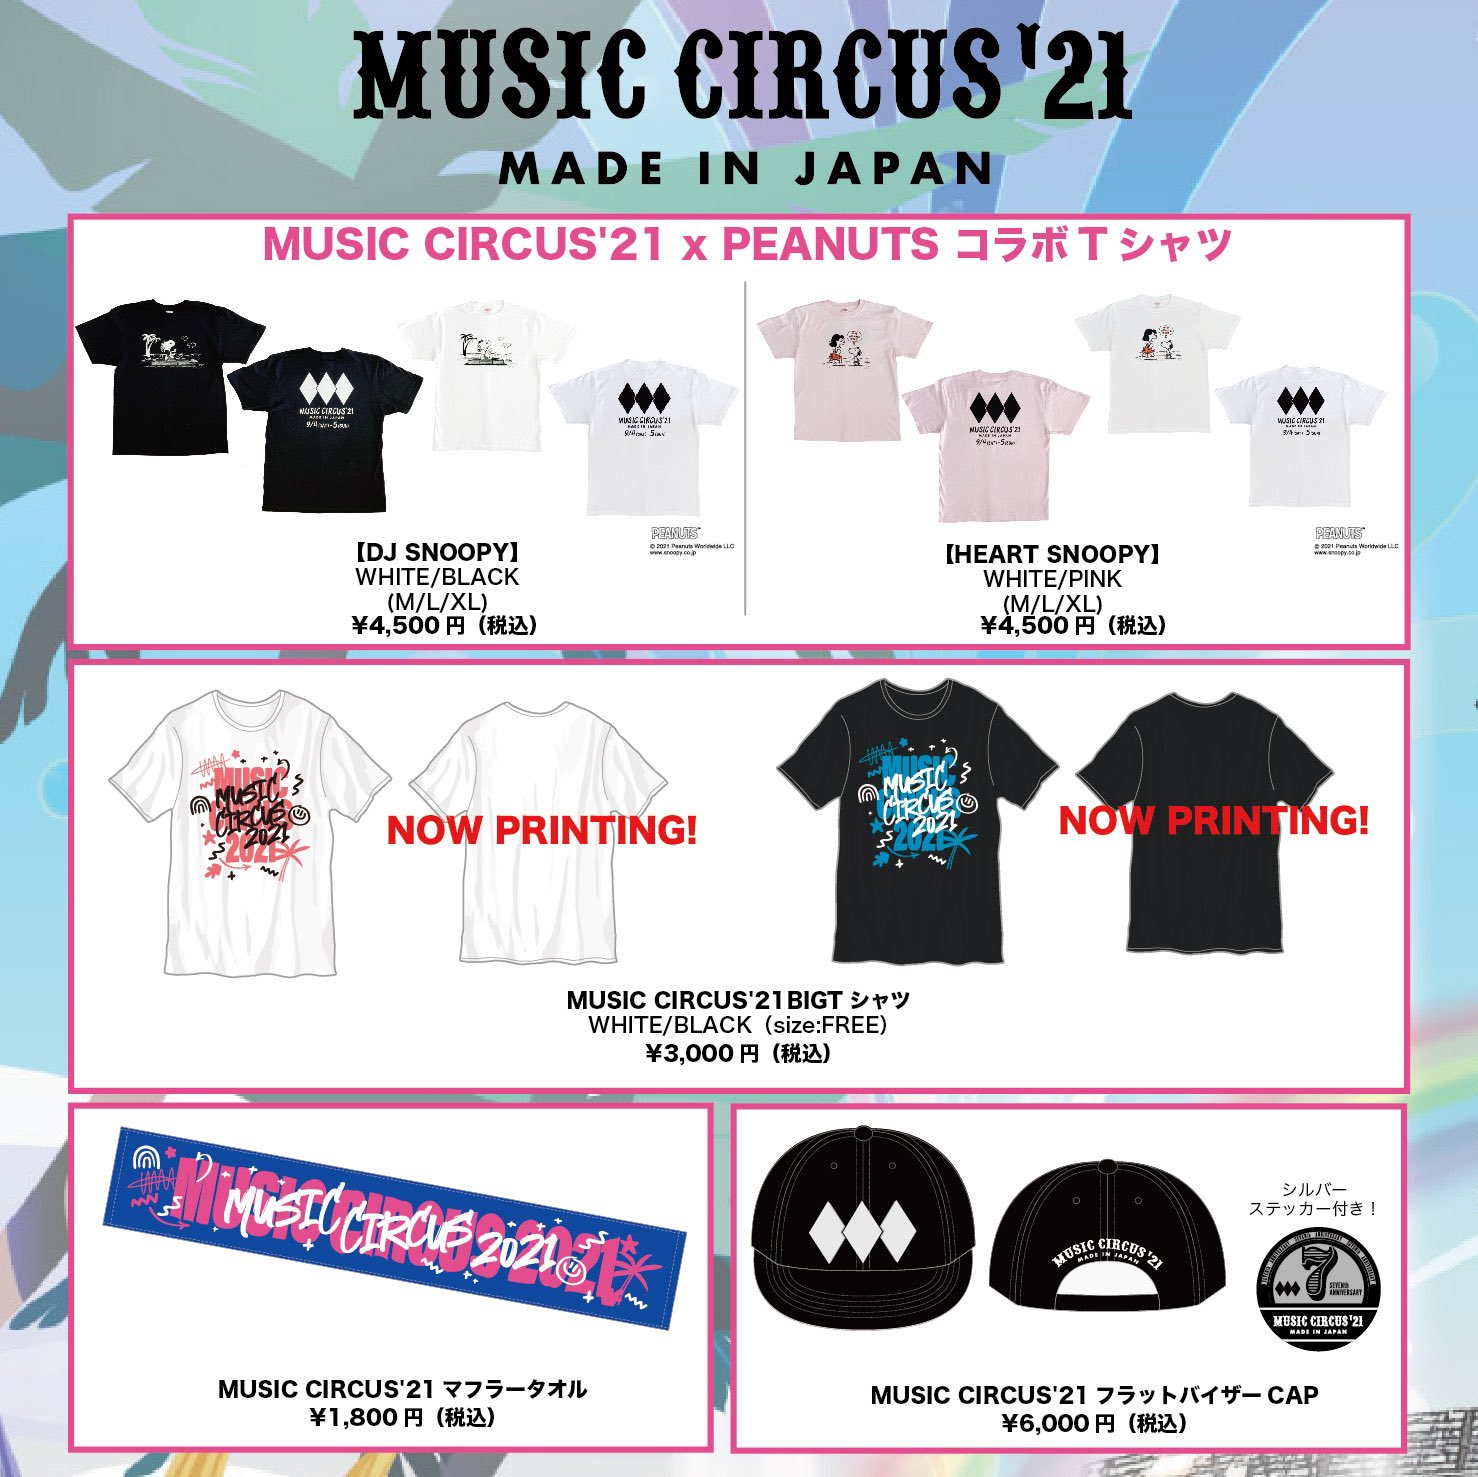 ☆MUSIC SIRCUS'15プレミアムチケット☆10/11 EDMフェス - blog.knak.jp